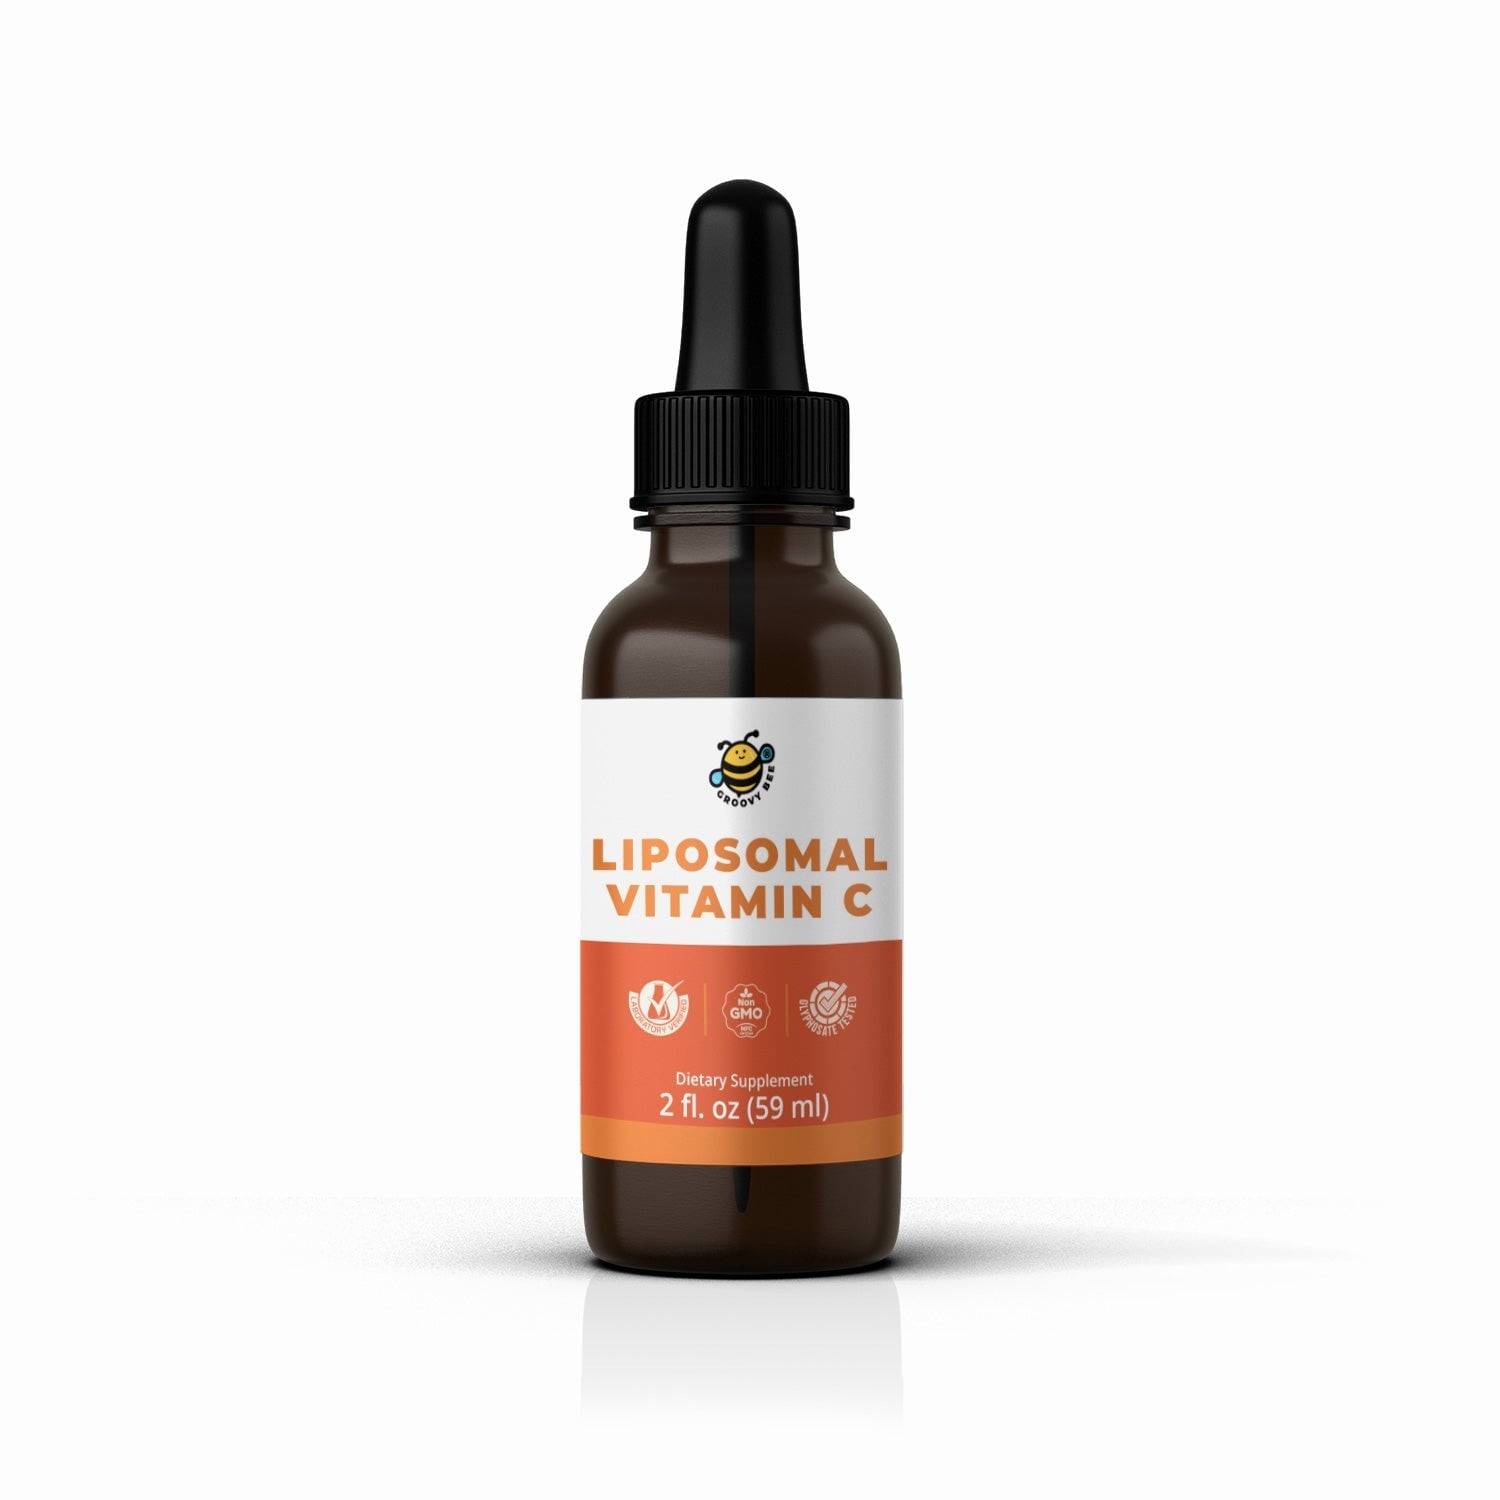 Liposomal Vitamin C 2 fl. oz (59 ml) Supplements Brighteon Store 